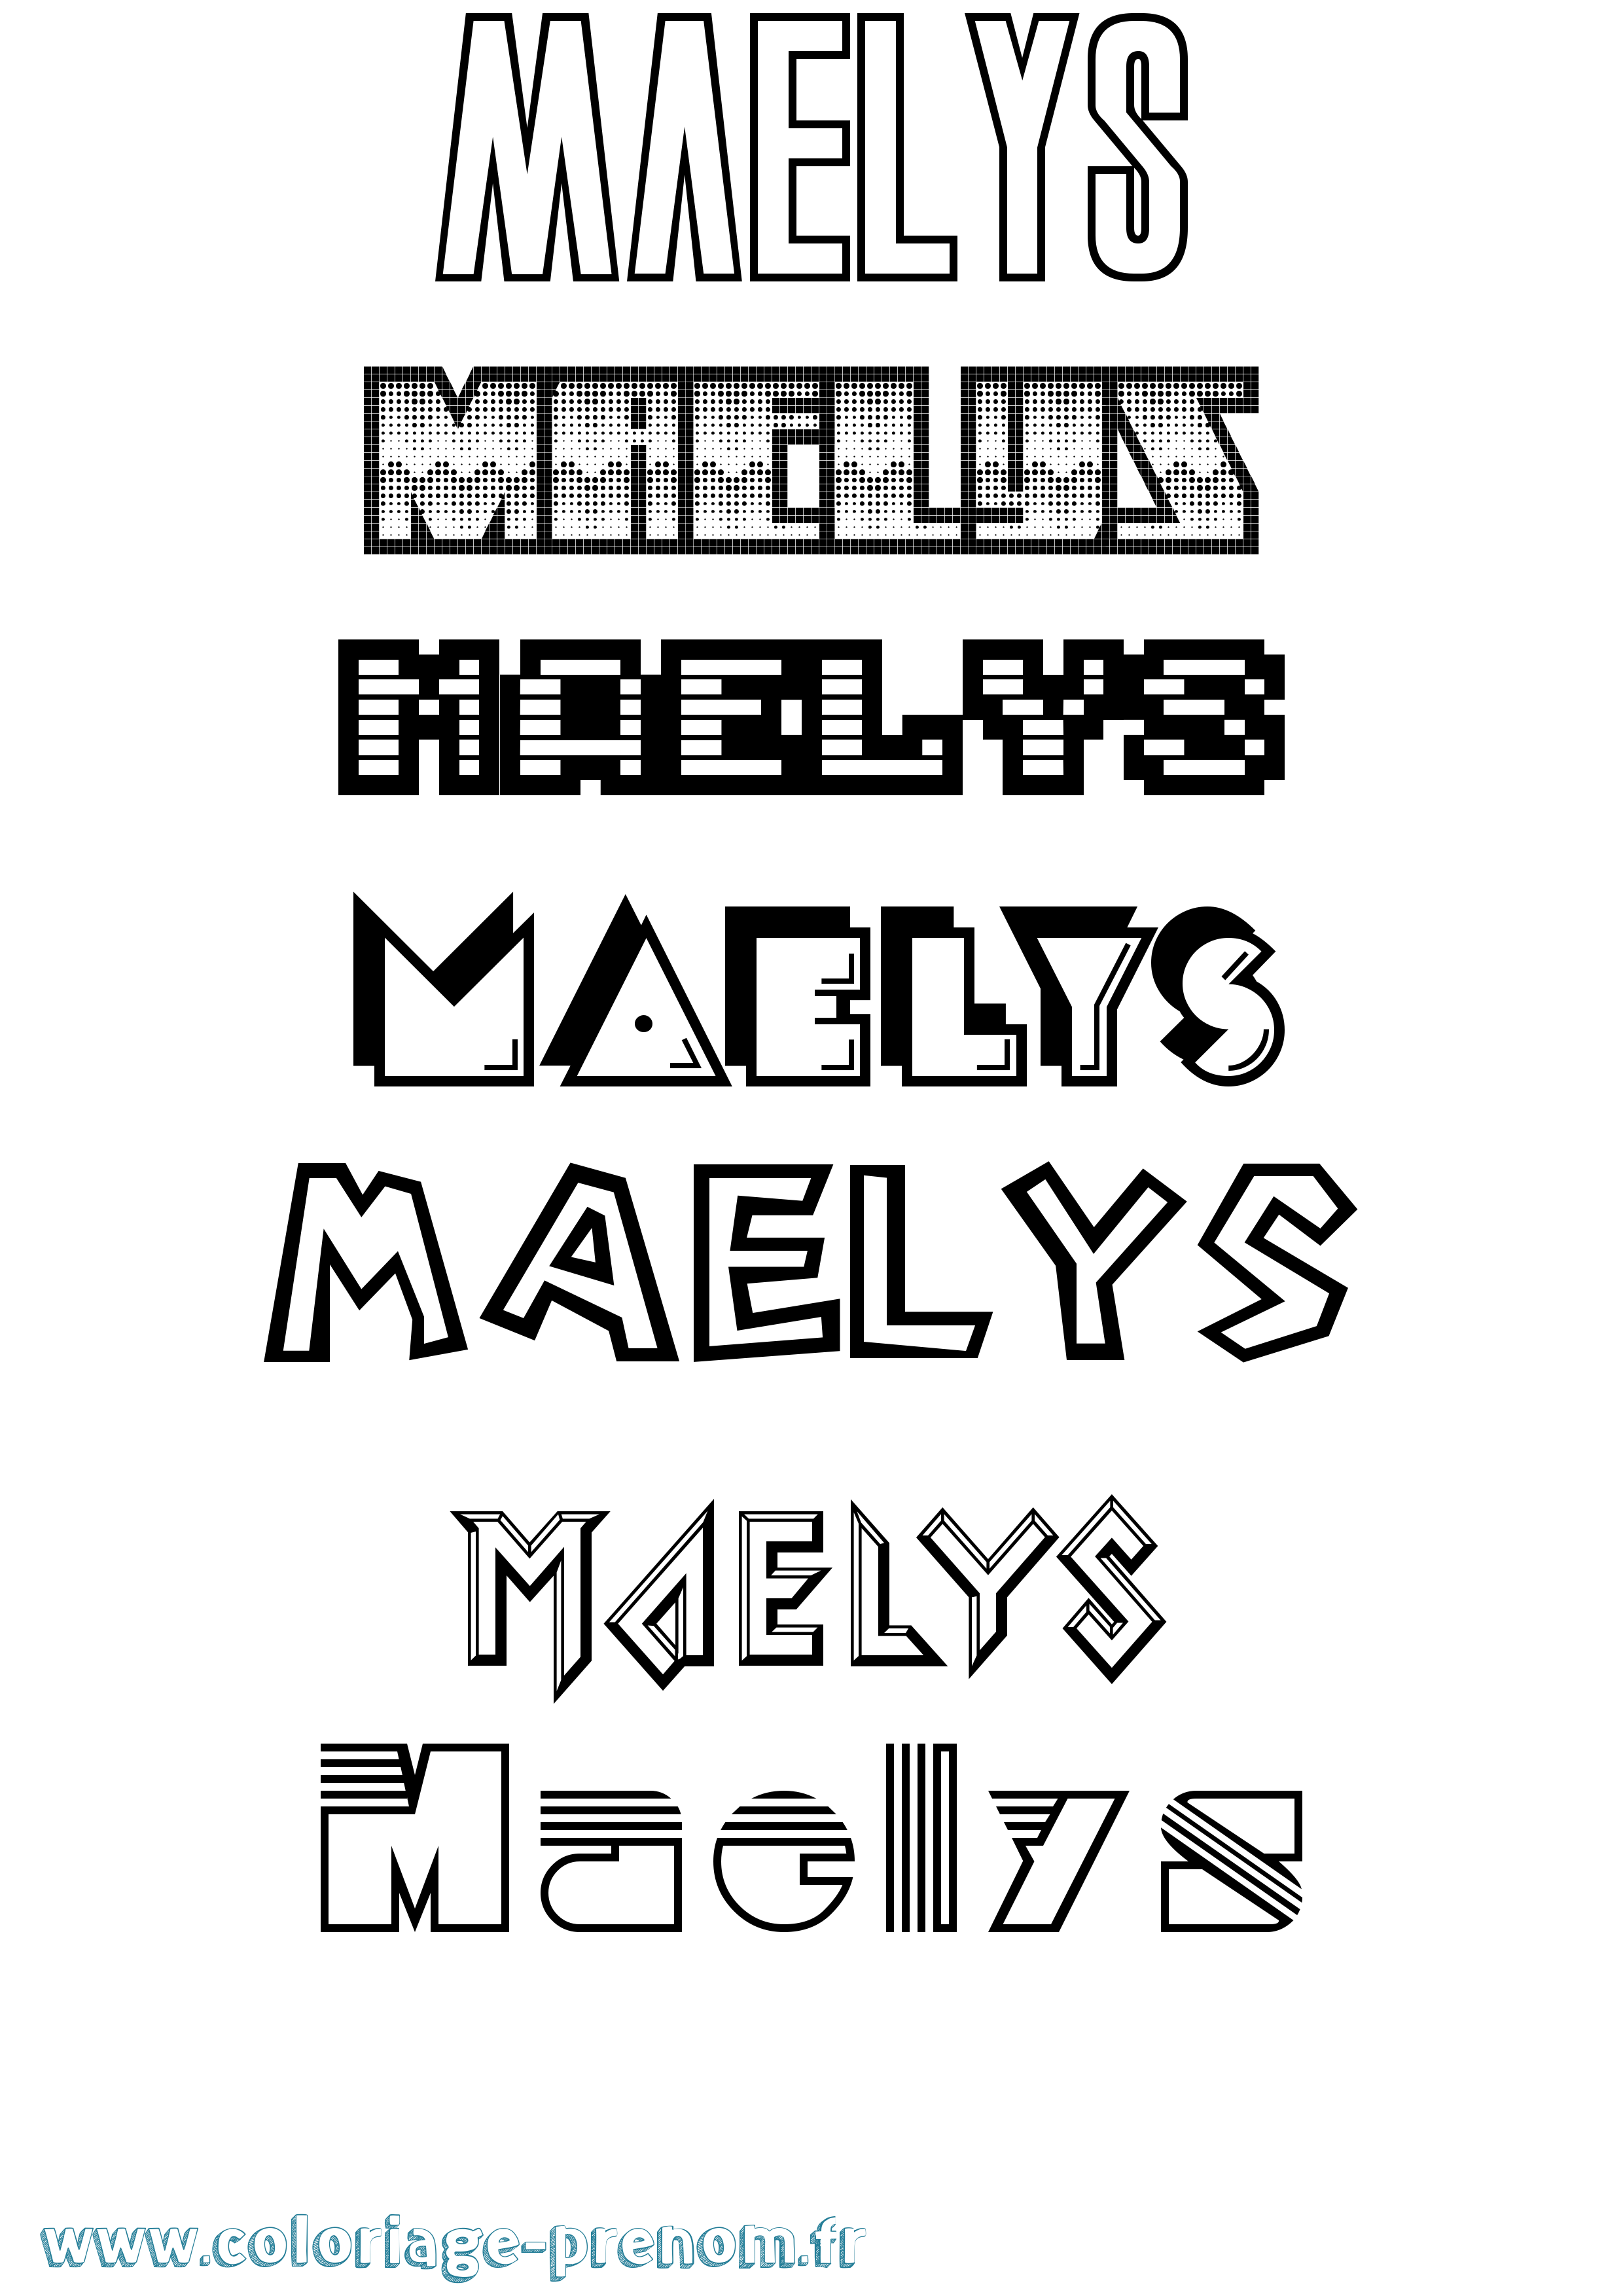 Coloriage prénom Maelys Jeux Vidéos